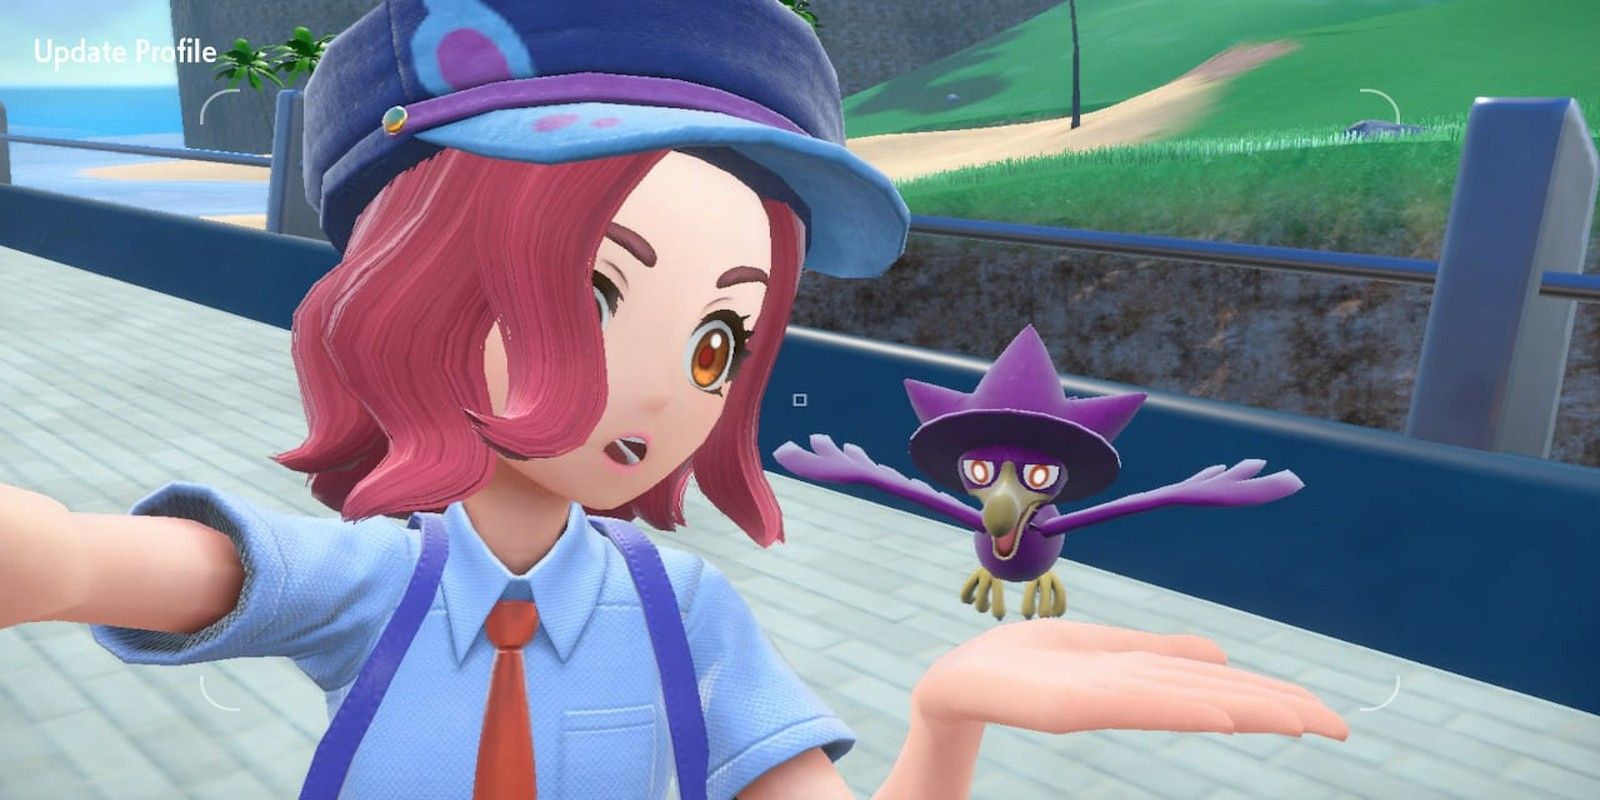 Pokémon Scarlet & Violet: Best Mimikyu Builds For Ranked Battles